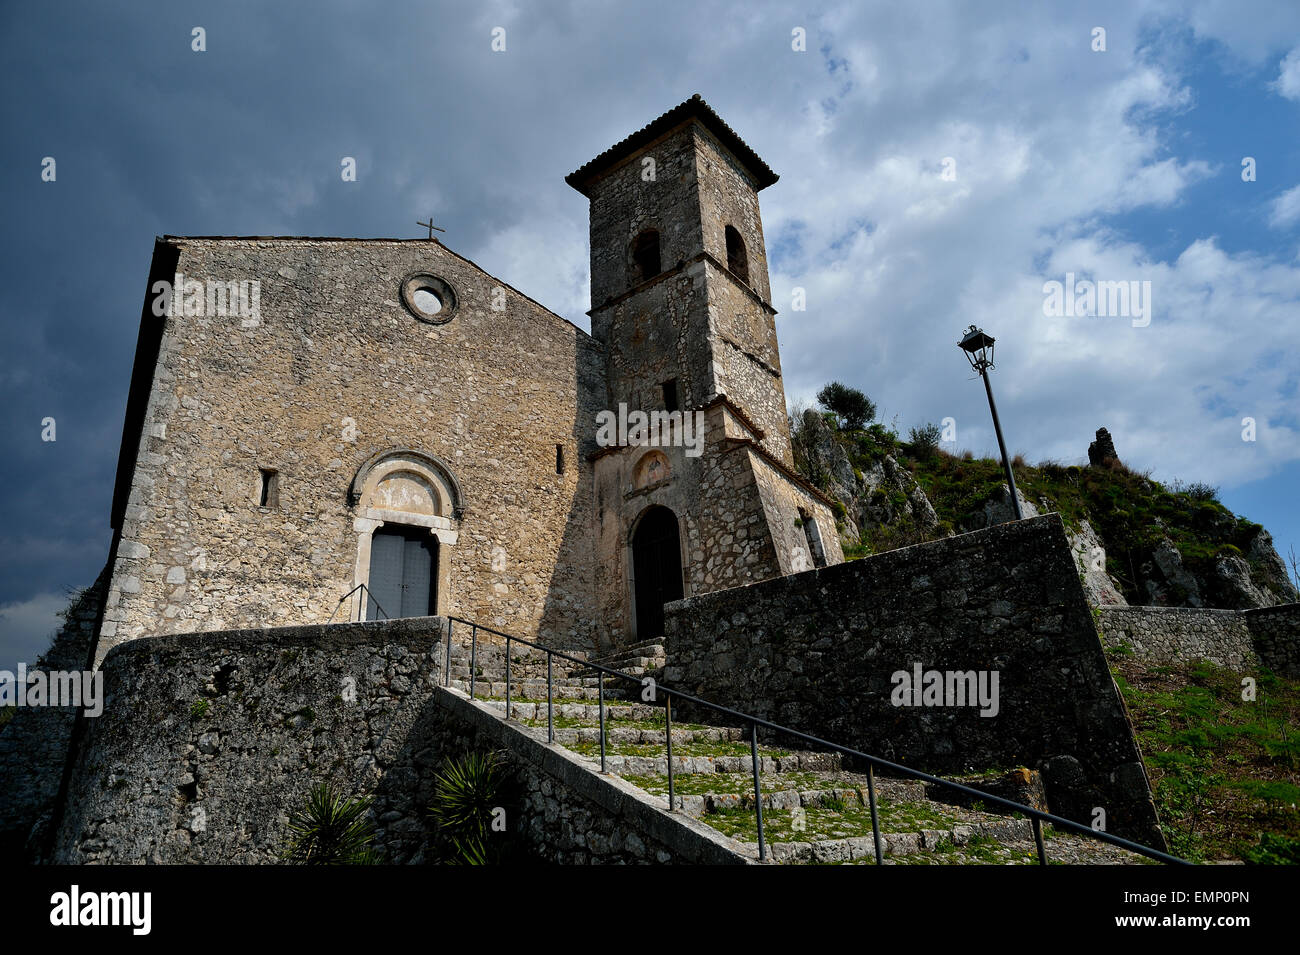 Saint Thomas at Castle Church (1323), Roccasecca, Frosinone, Lazio, Italy, Europe Stock Photo